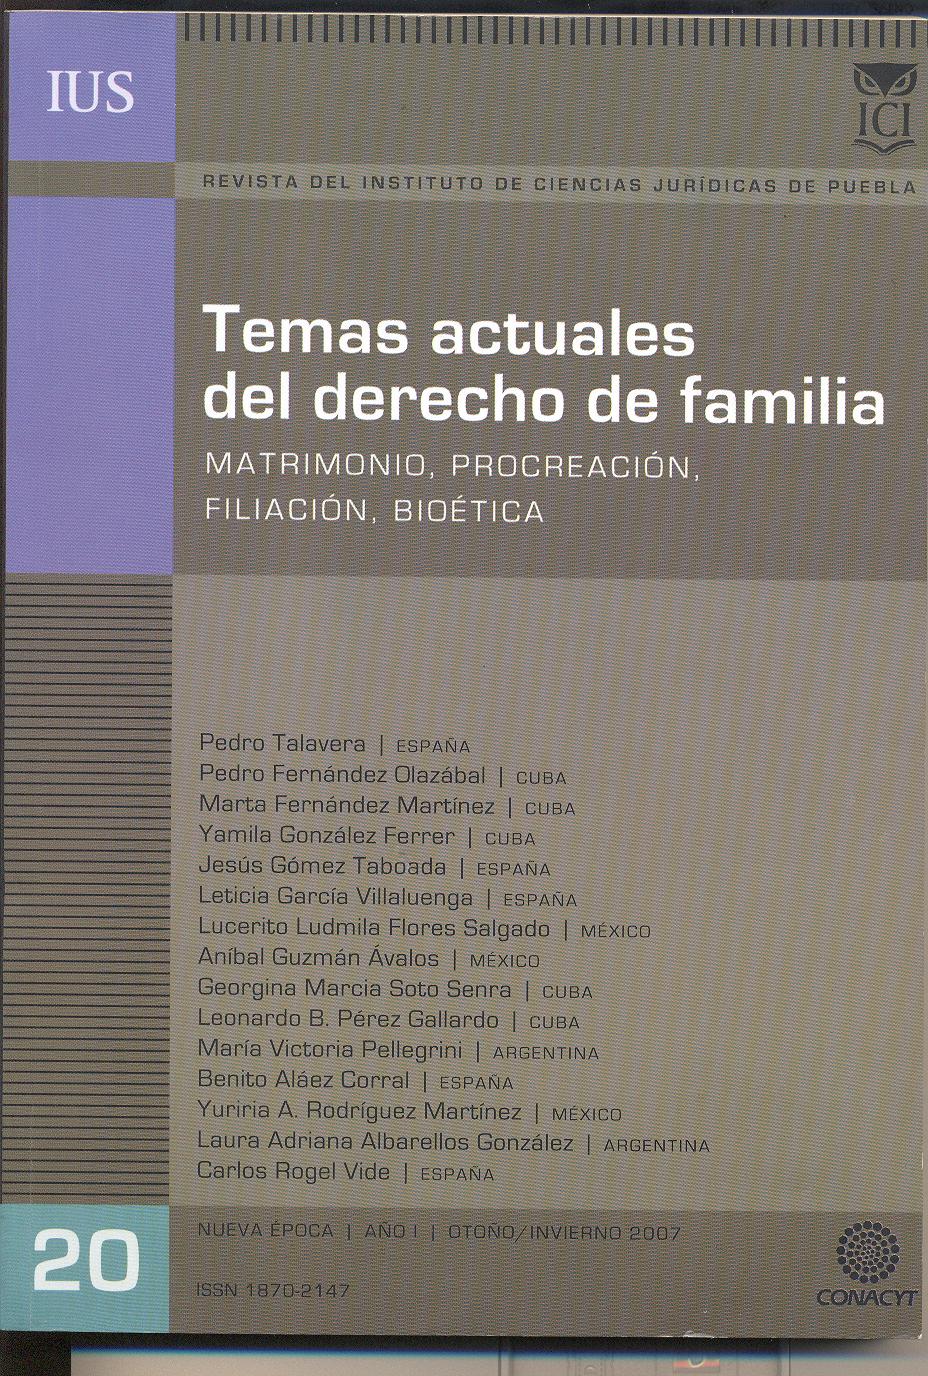 					View Vol. 1 No. 20 (2007): Temas actuales del derecho de familia. Matrimonio, Procreación, Filiación, Bioética
				